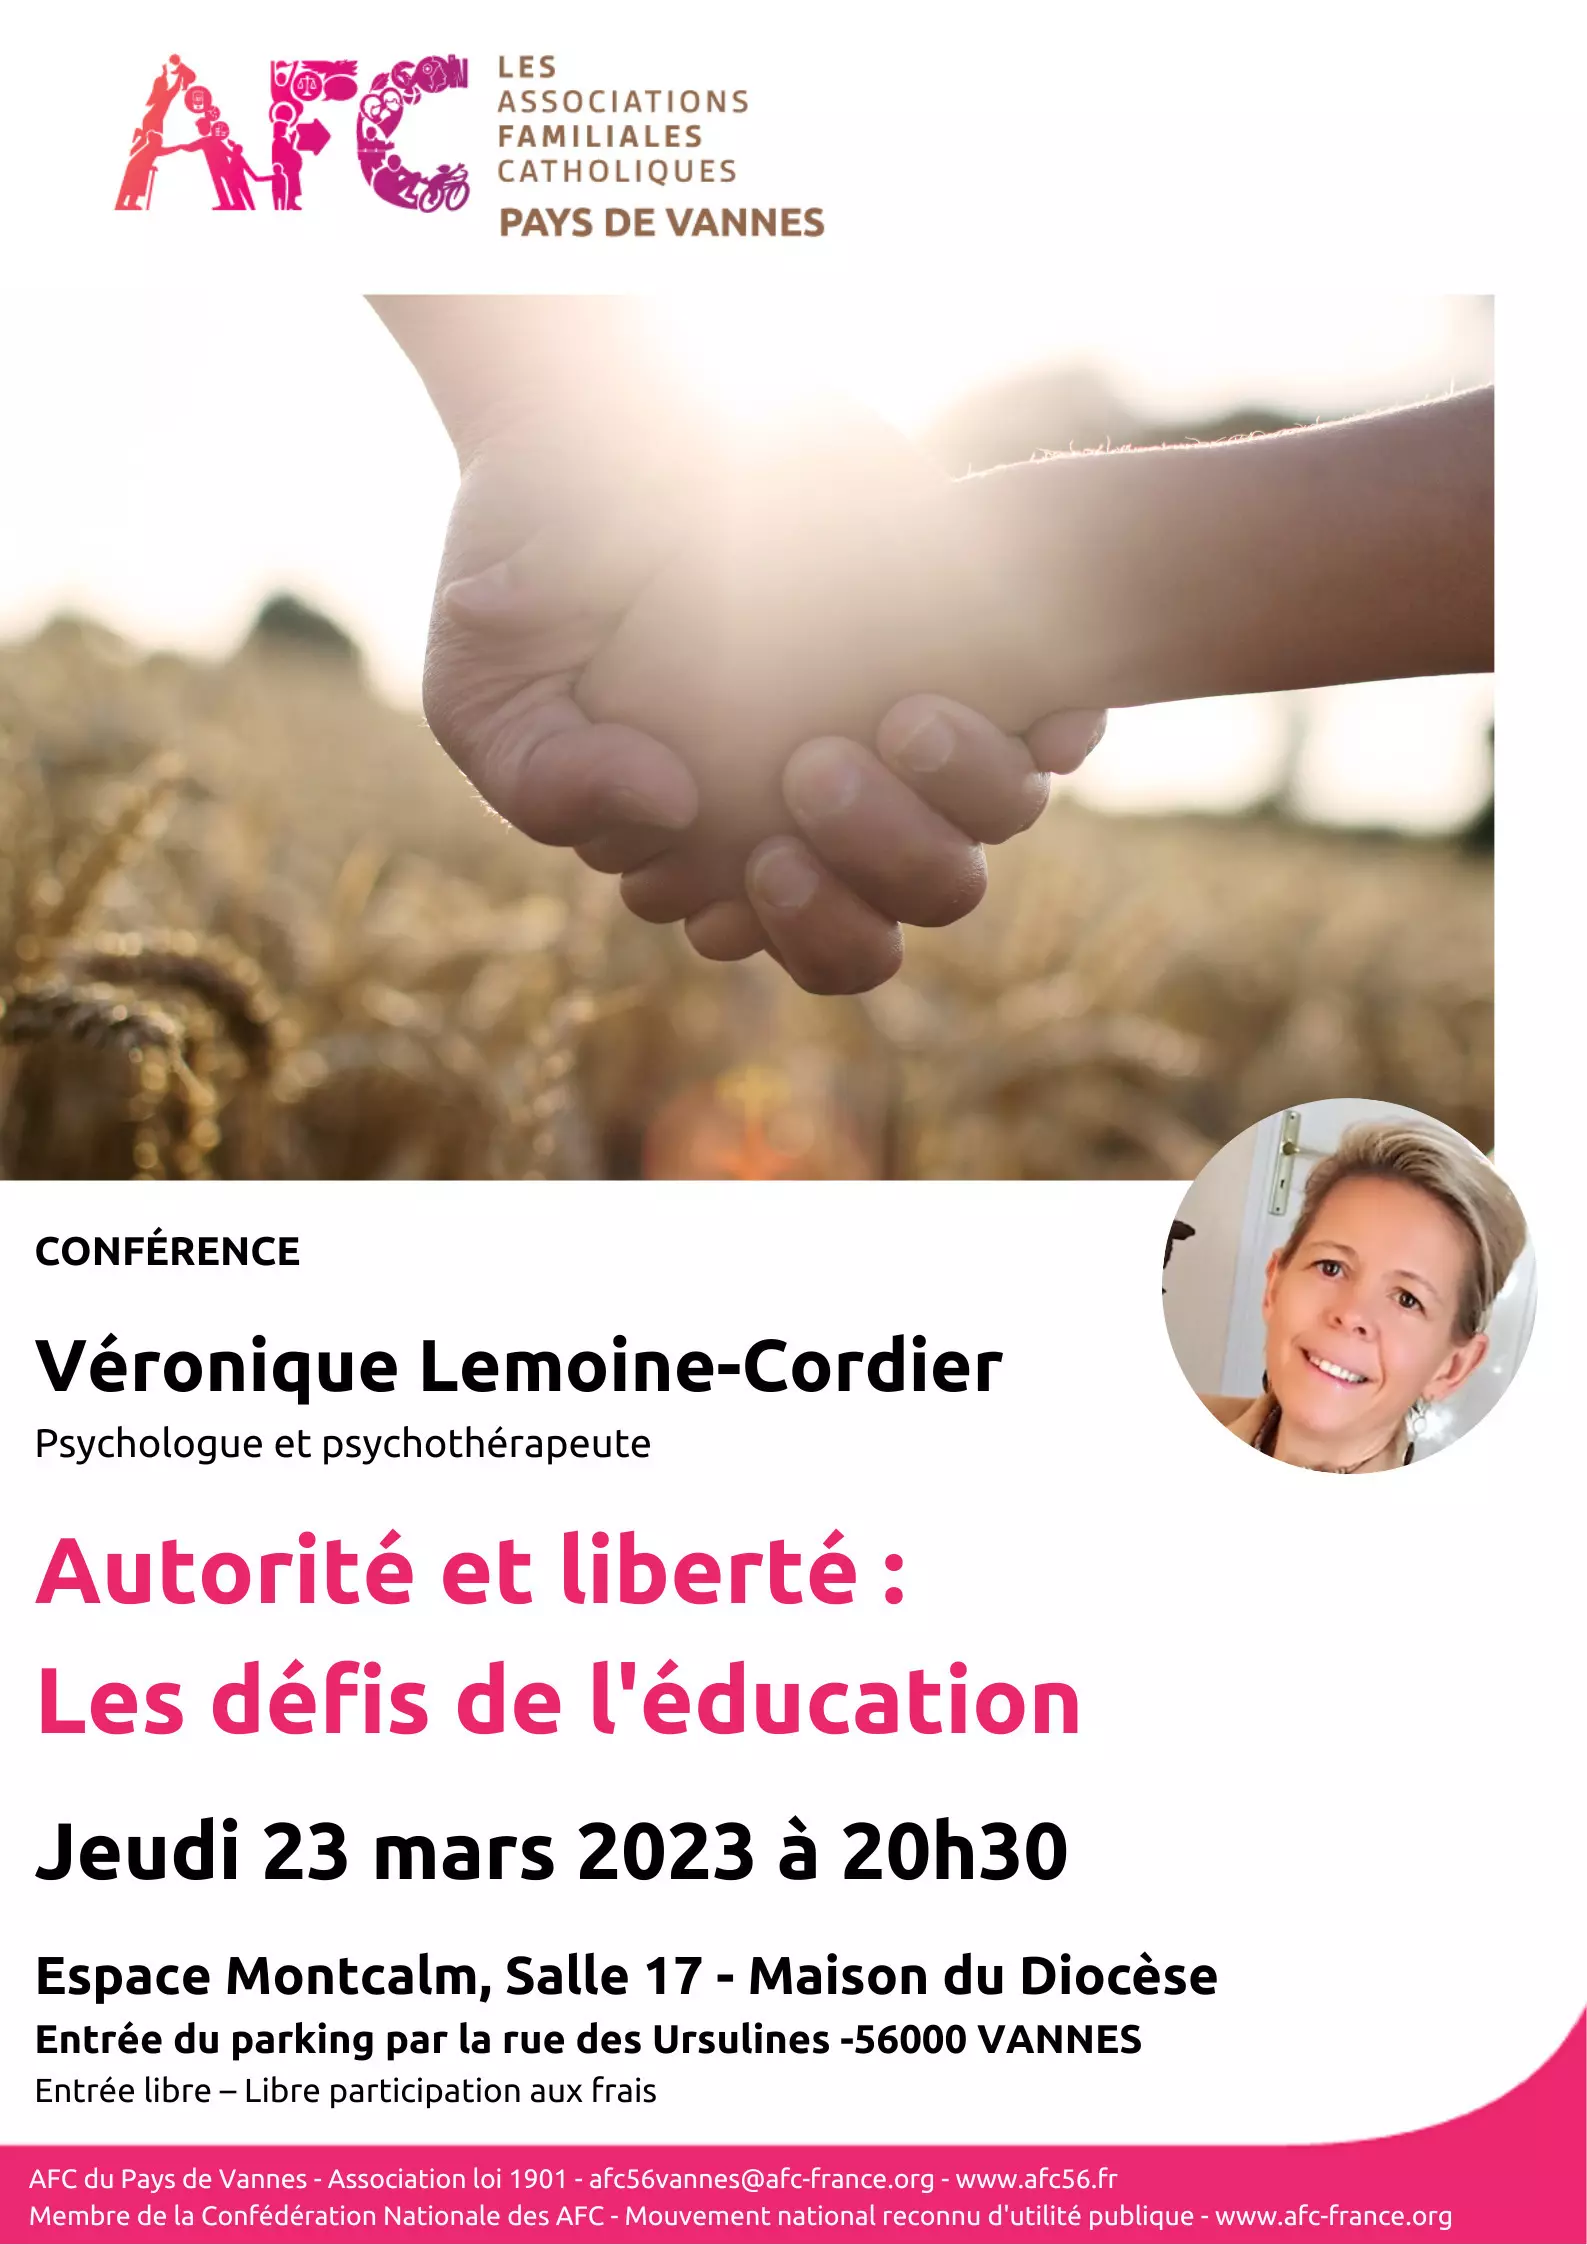 Rassemblements-Conférence "Autorité et liberté : les défis de l'éducation" avec Véronique Lemoine-Cordier